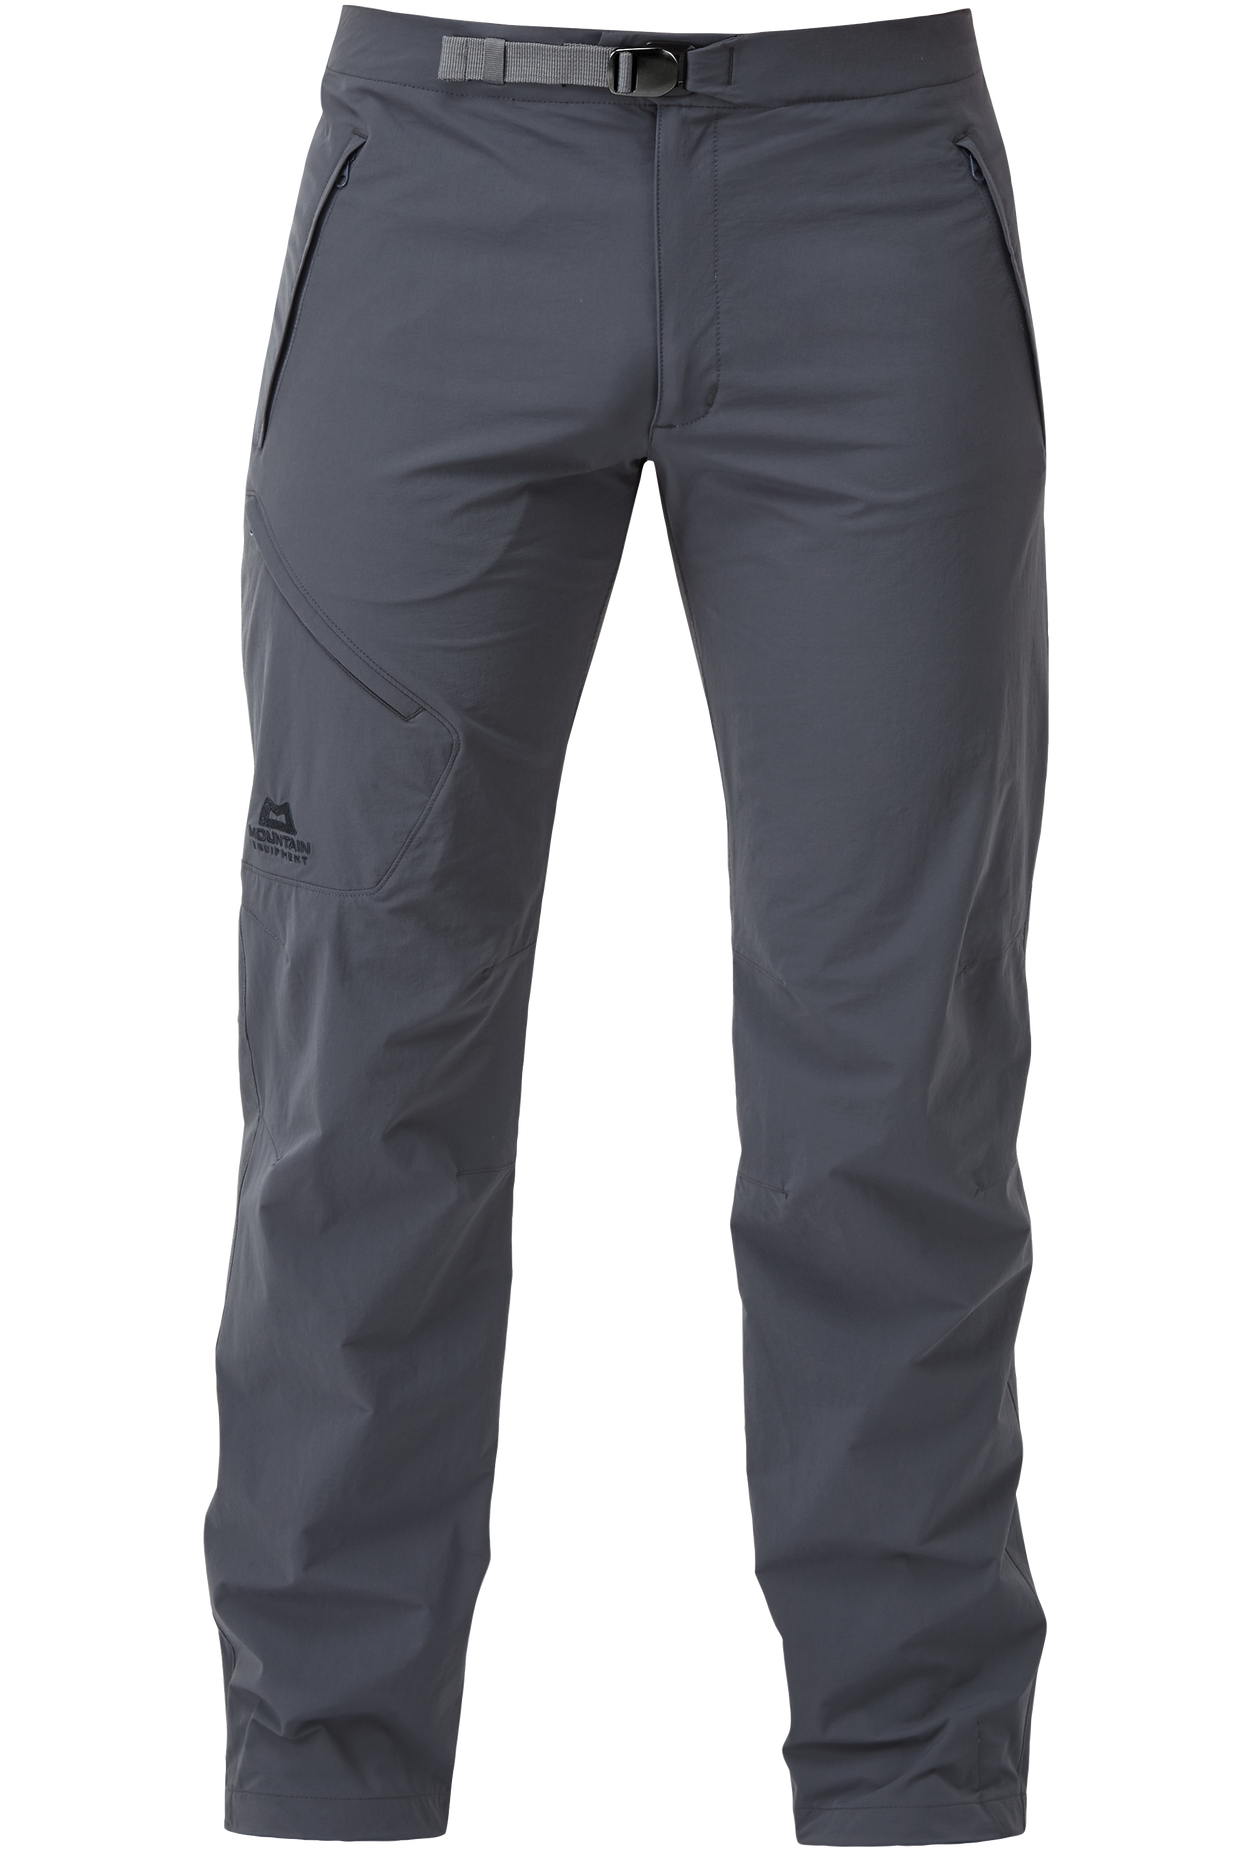 Mountain Equipment pánské softshellové kalhoty Comici Pant - prodloužené Barva: Ombre Blue, Velikost: 38/XXL